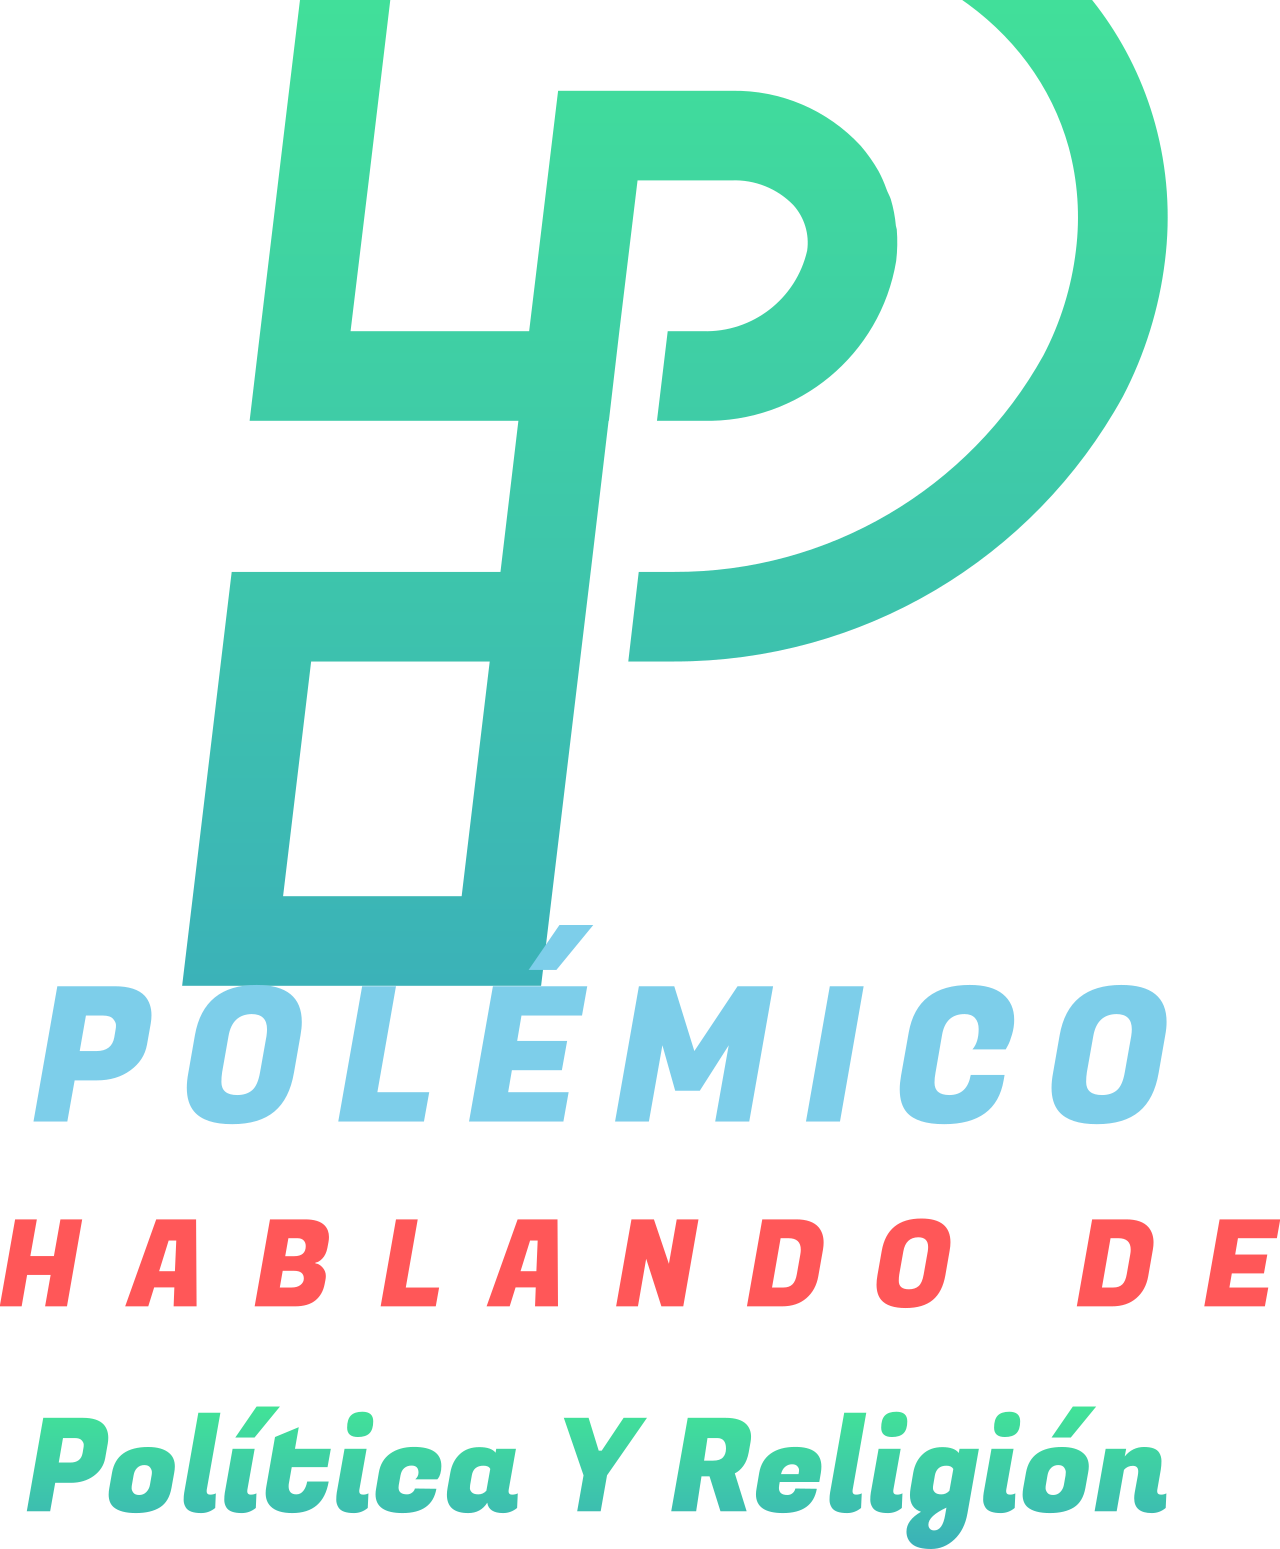 Polémico  's logo